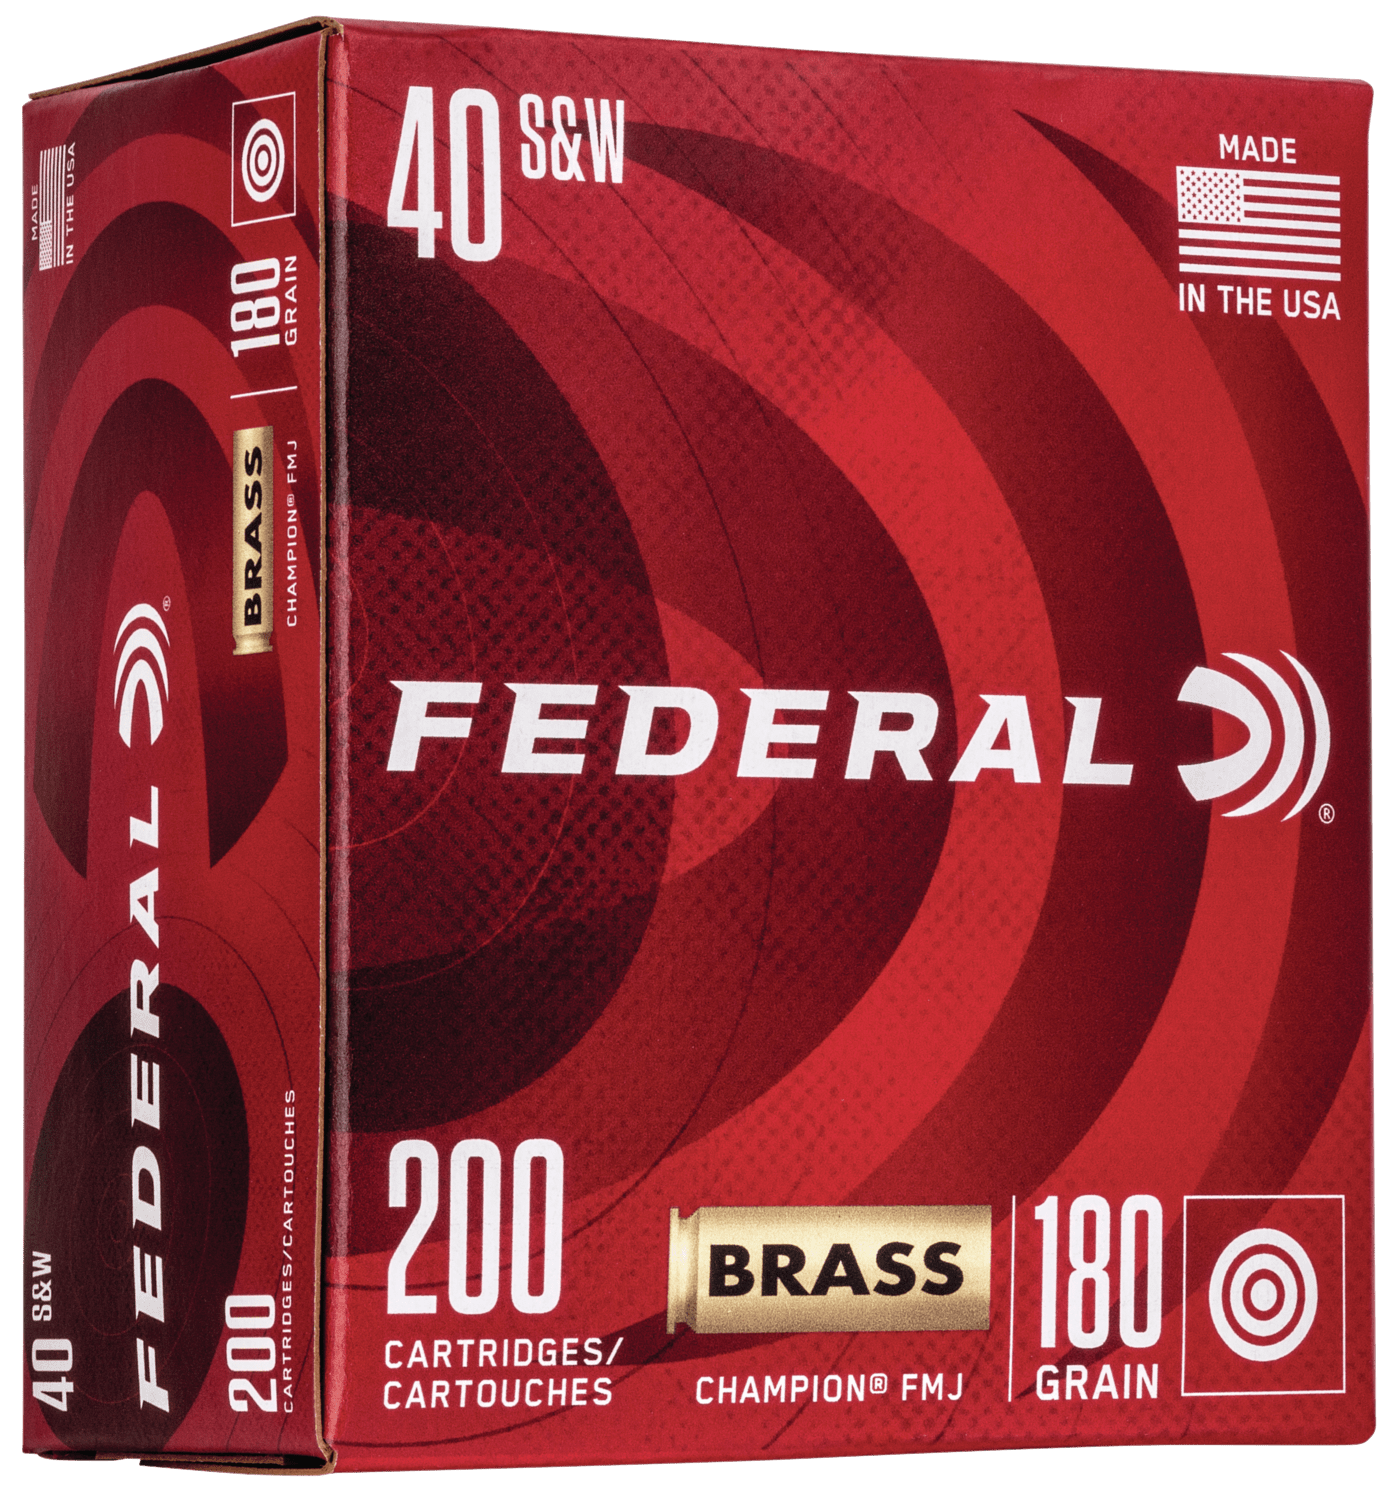 Federal Fed Champ 40s&w 180gr Fmj 200/1000 Ammo